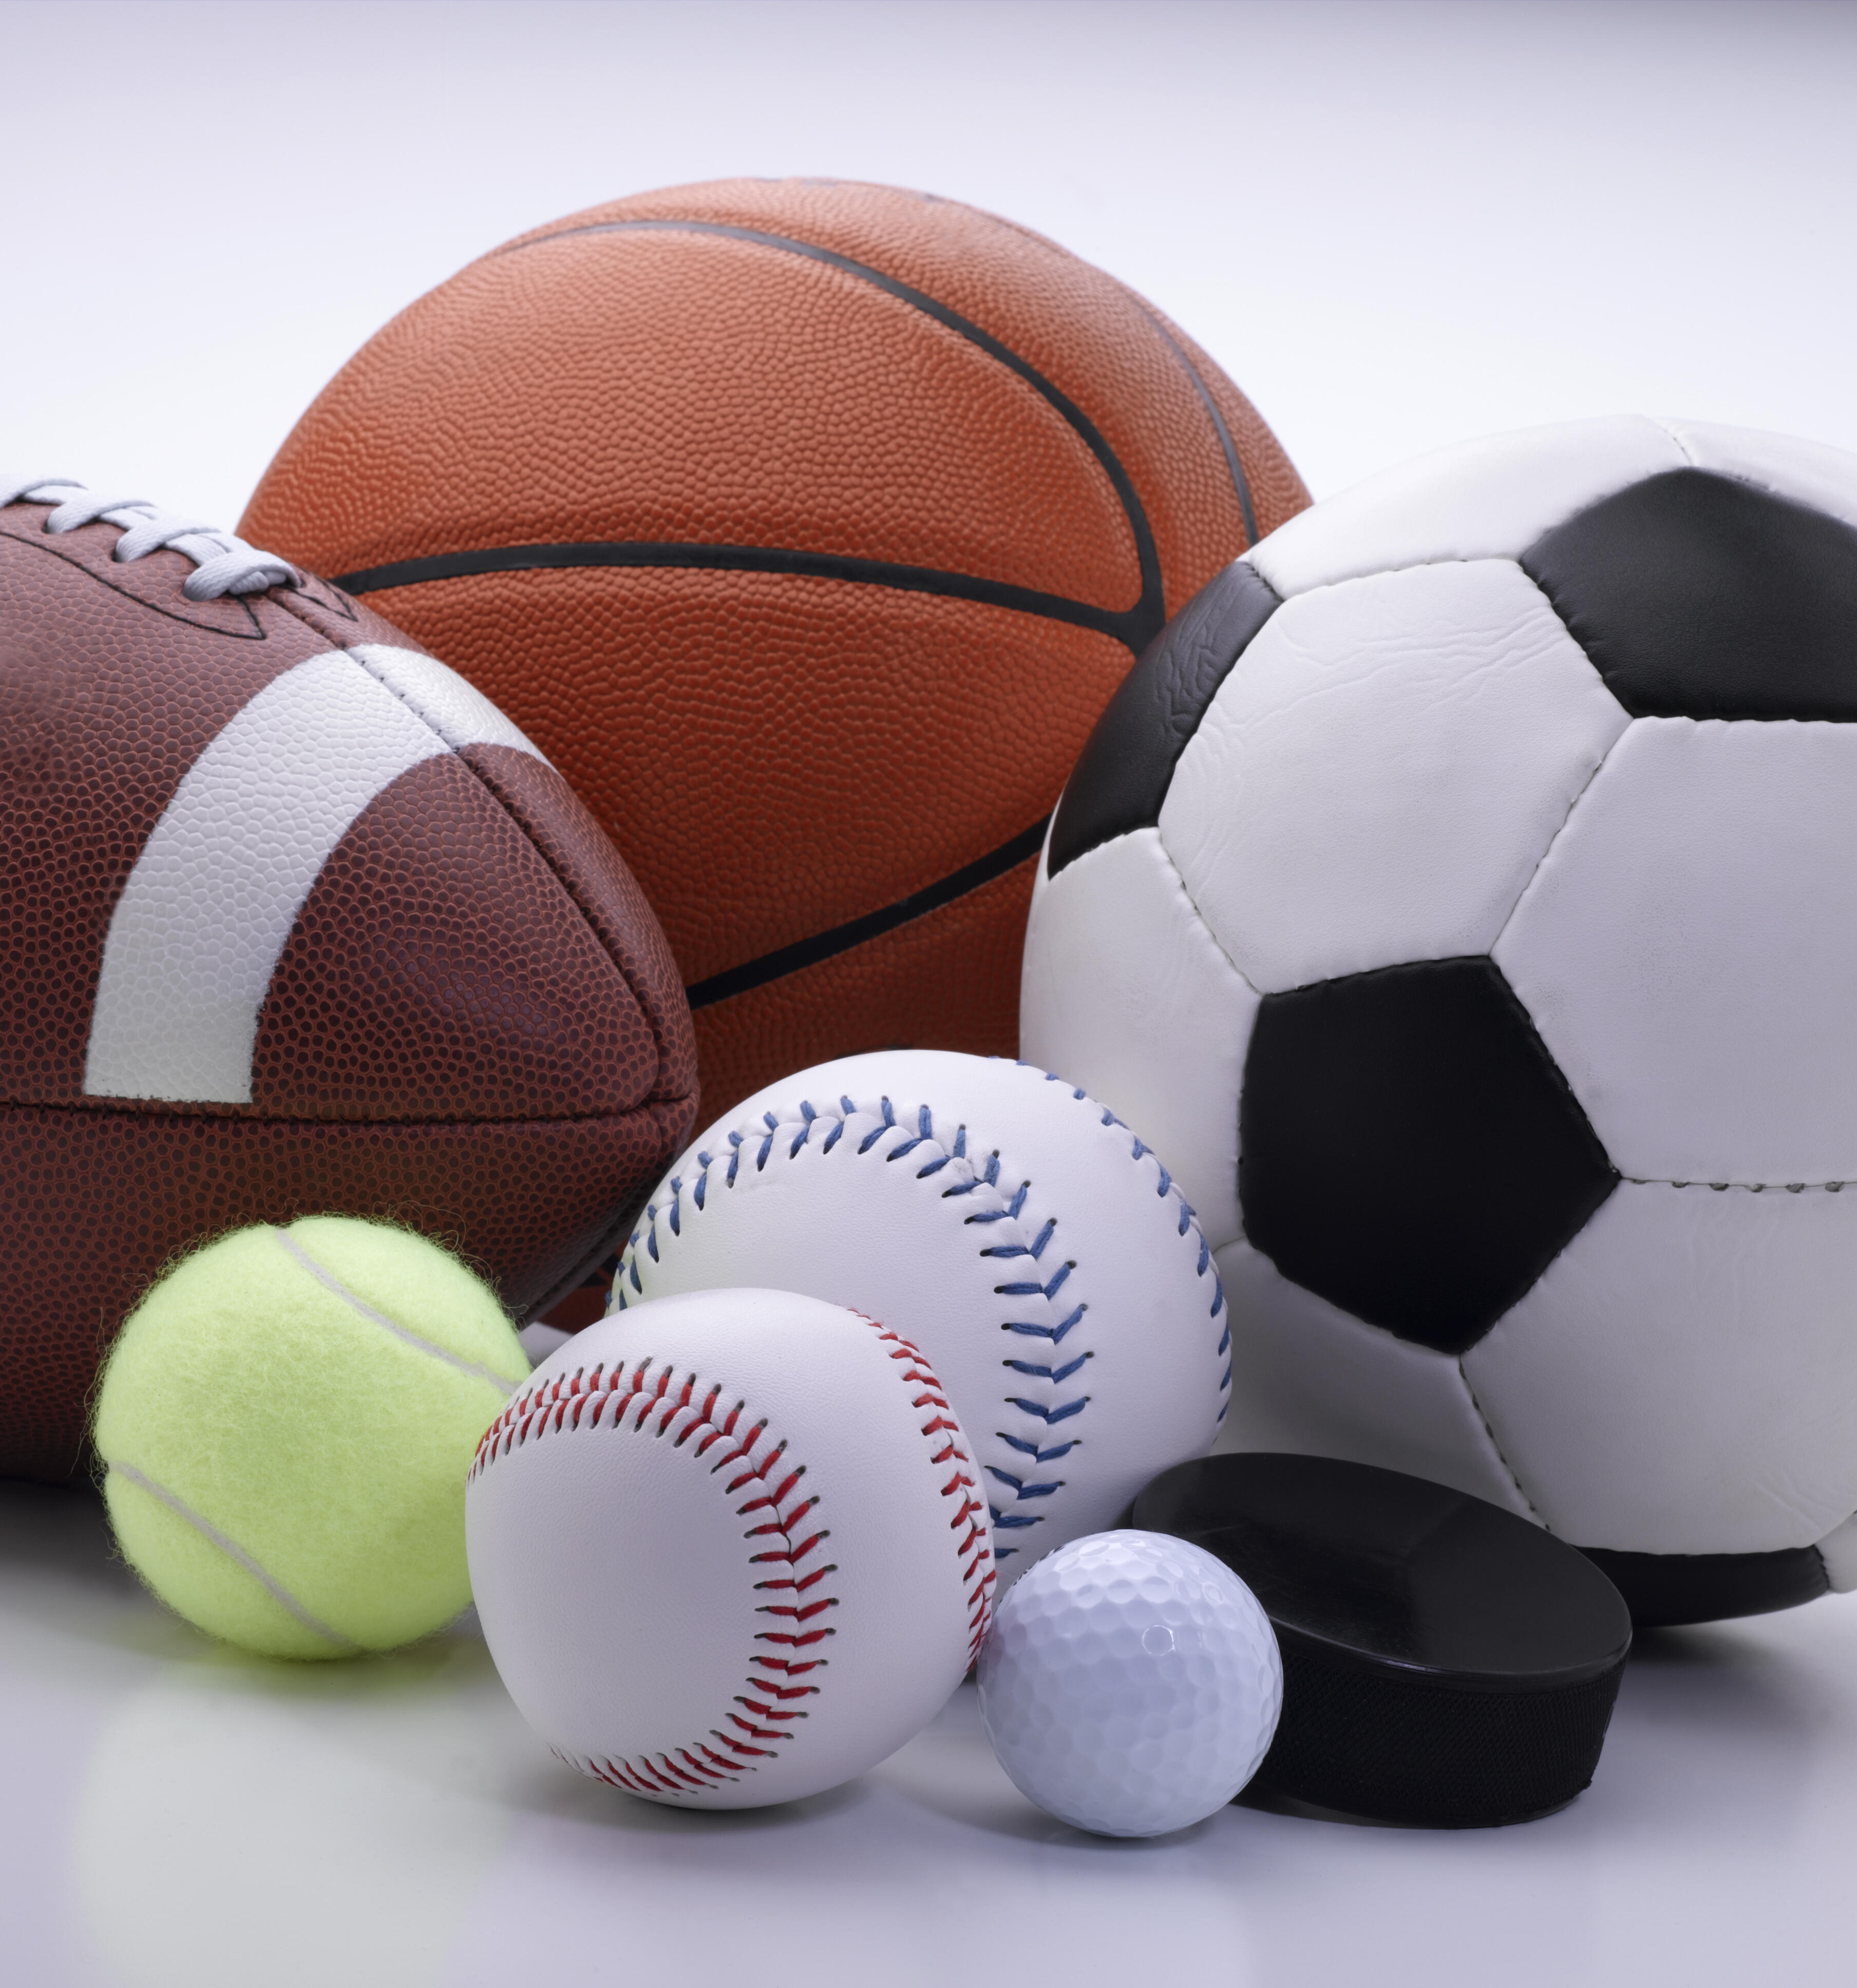 Sport contents. Спортивные мячи. Мяч (спорт). Мячи разные спортивные. Игровые виды спорта.